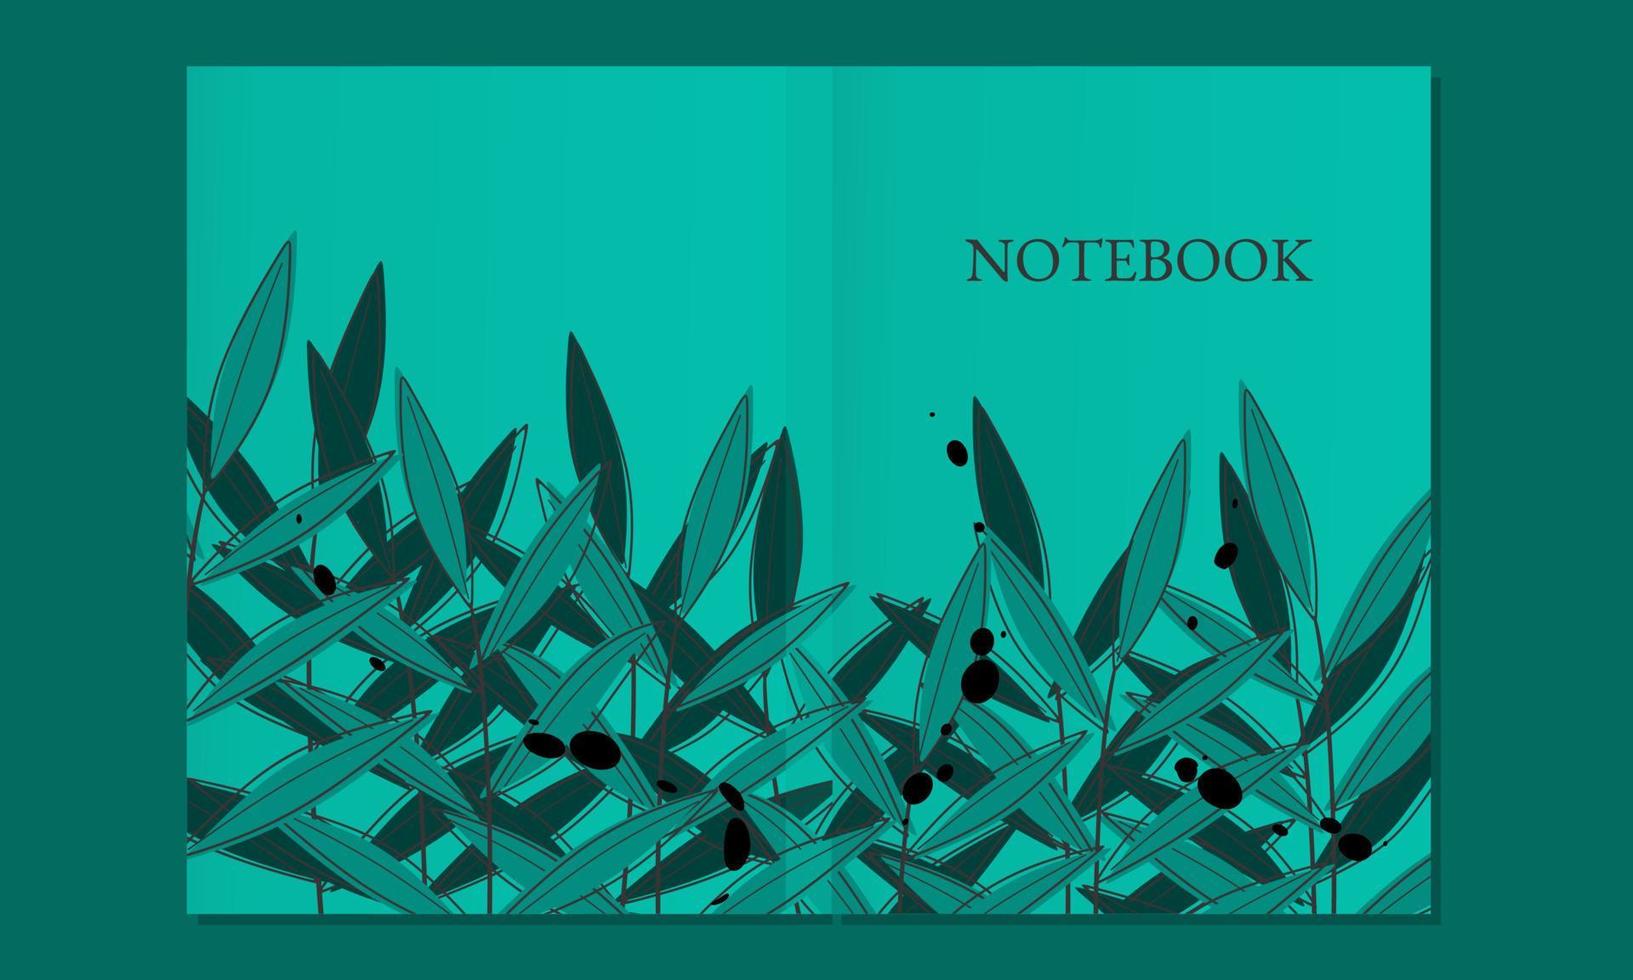 reeks van blauw natuur boek Hoes ontwerpen met blad silhouet elementen. abstract achtergrond. a4 grootte voor notitieboekjes, dagboeken, tijdschriften, affiches. vector